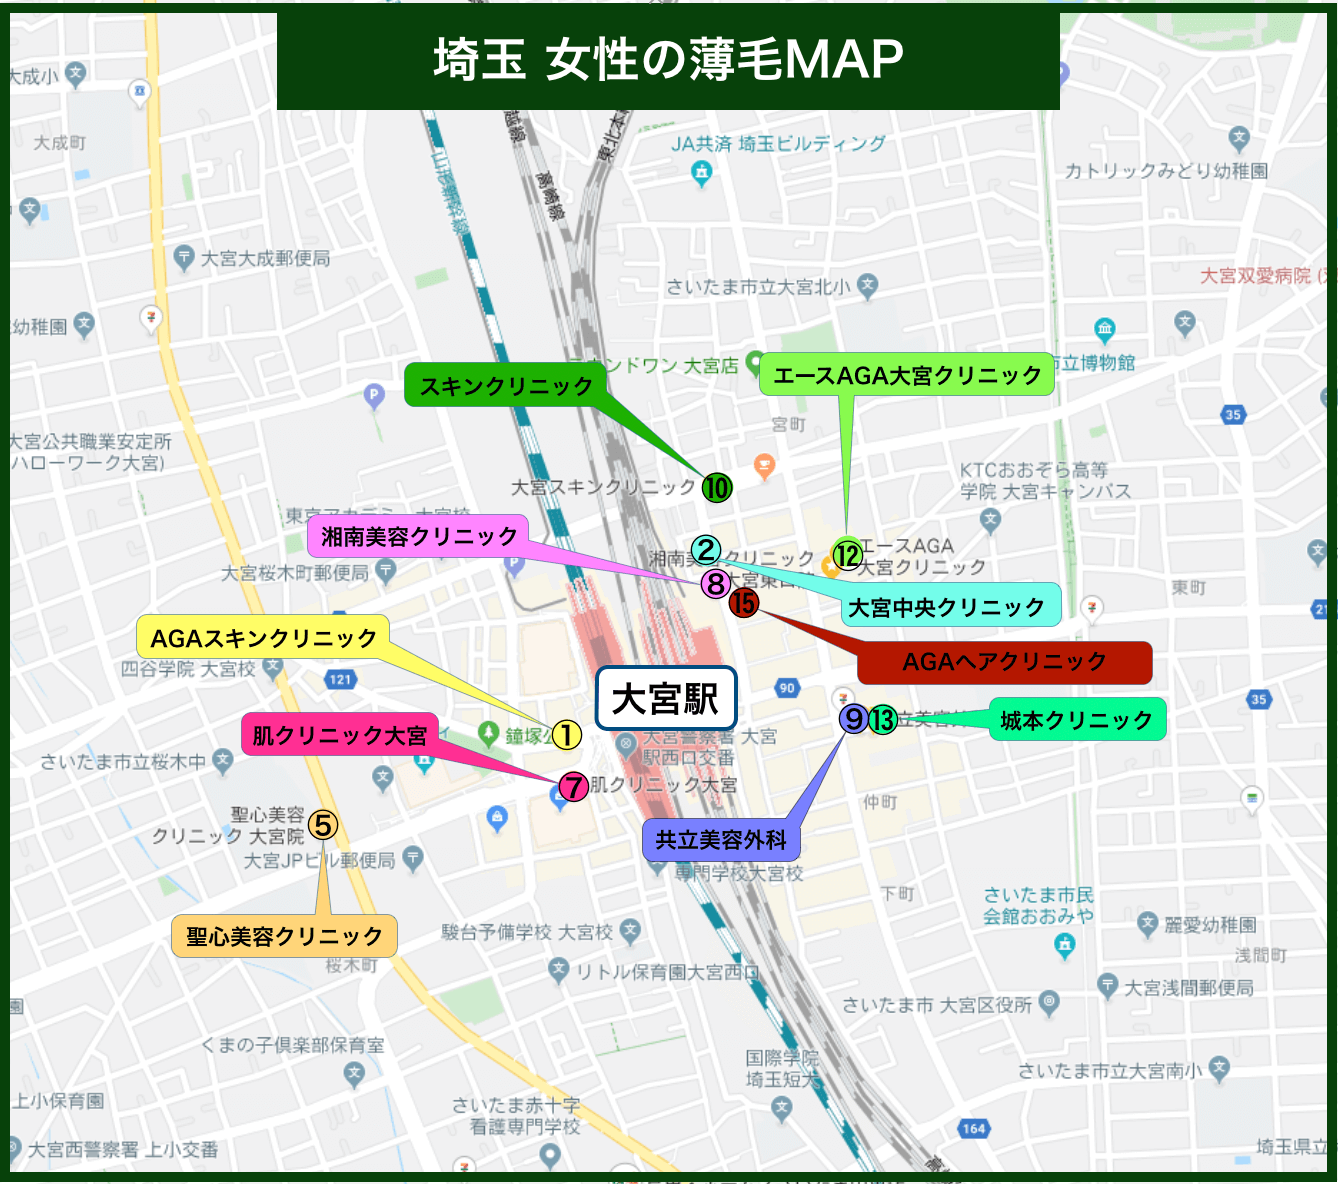 埼玉女性の薄毛MAP